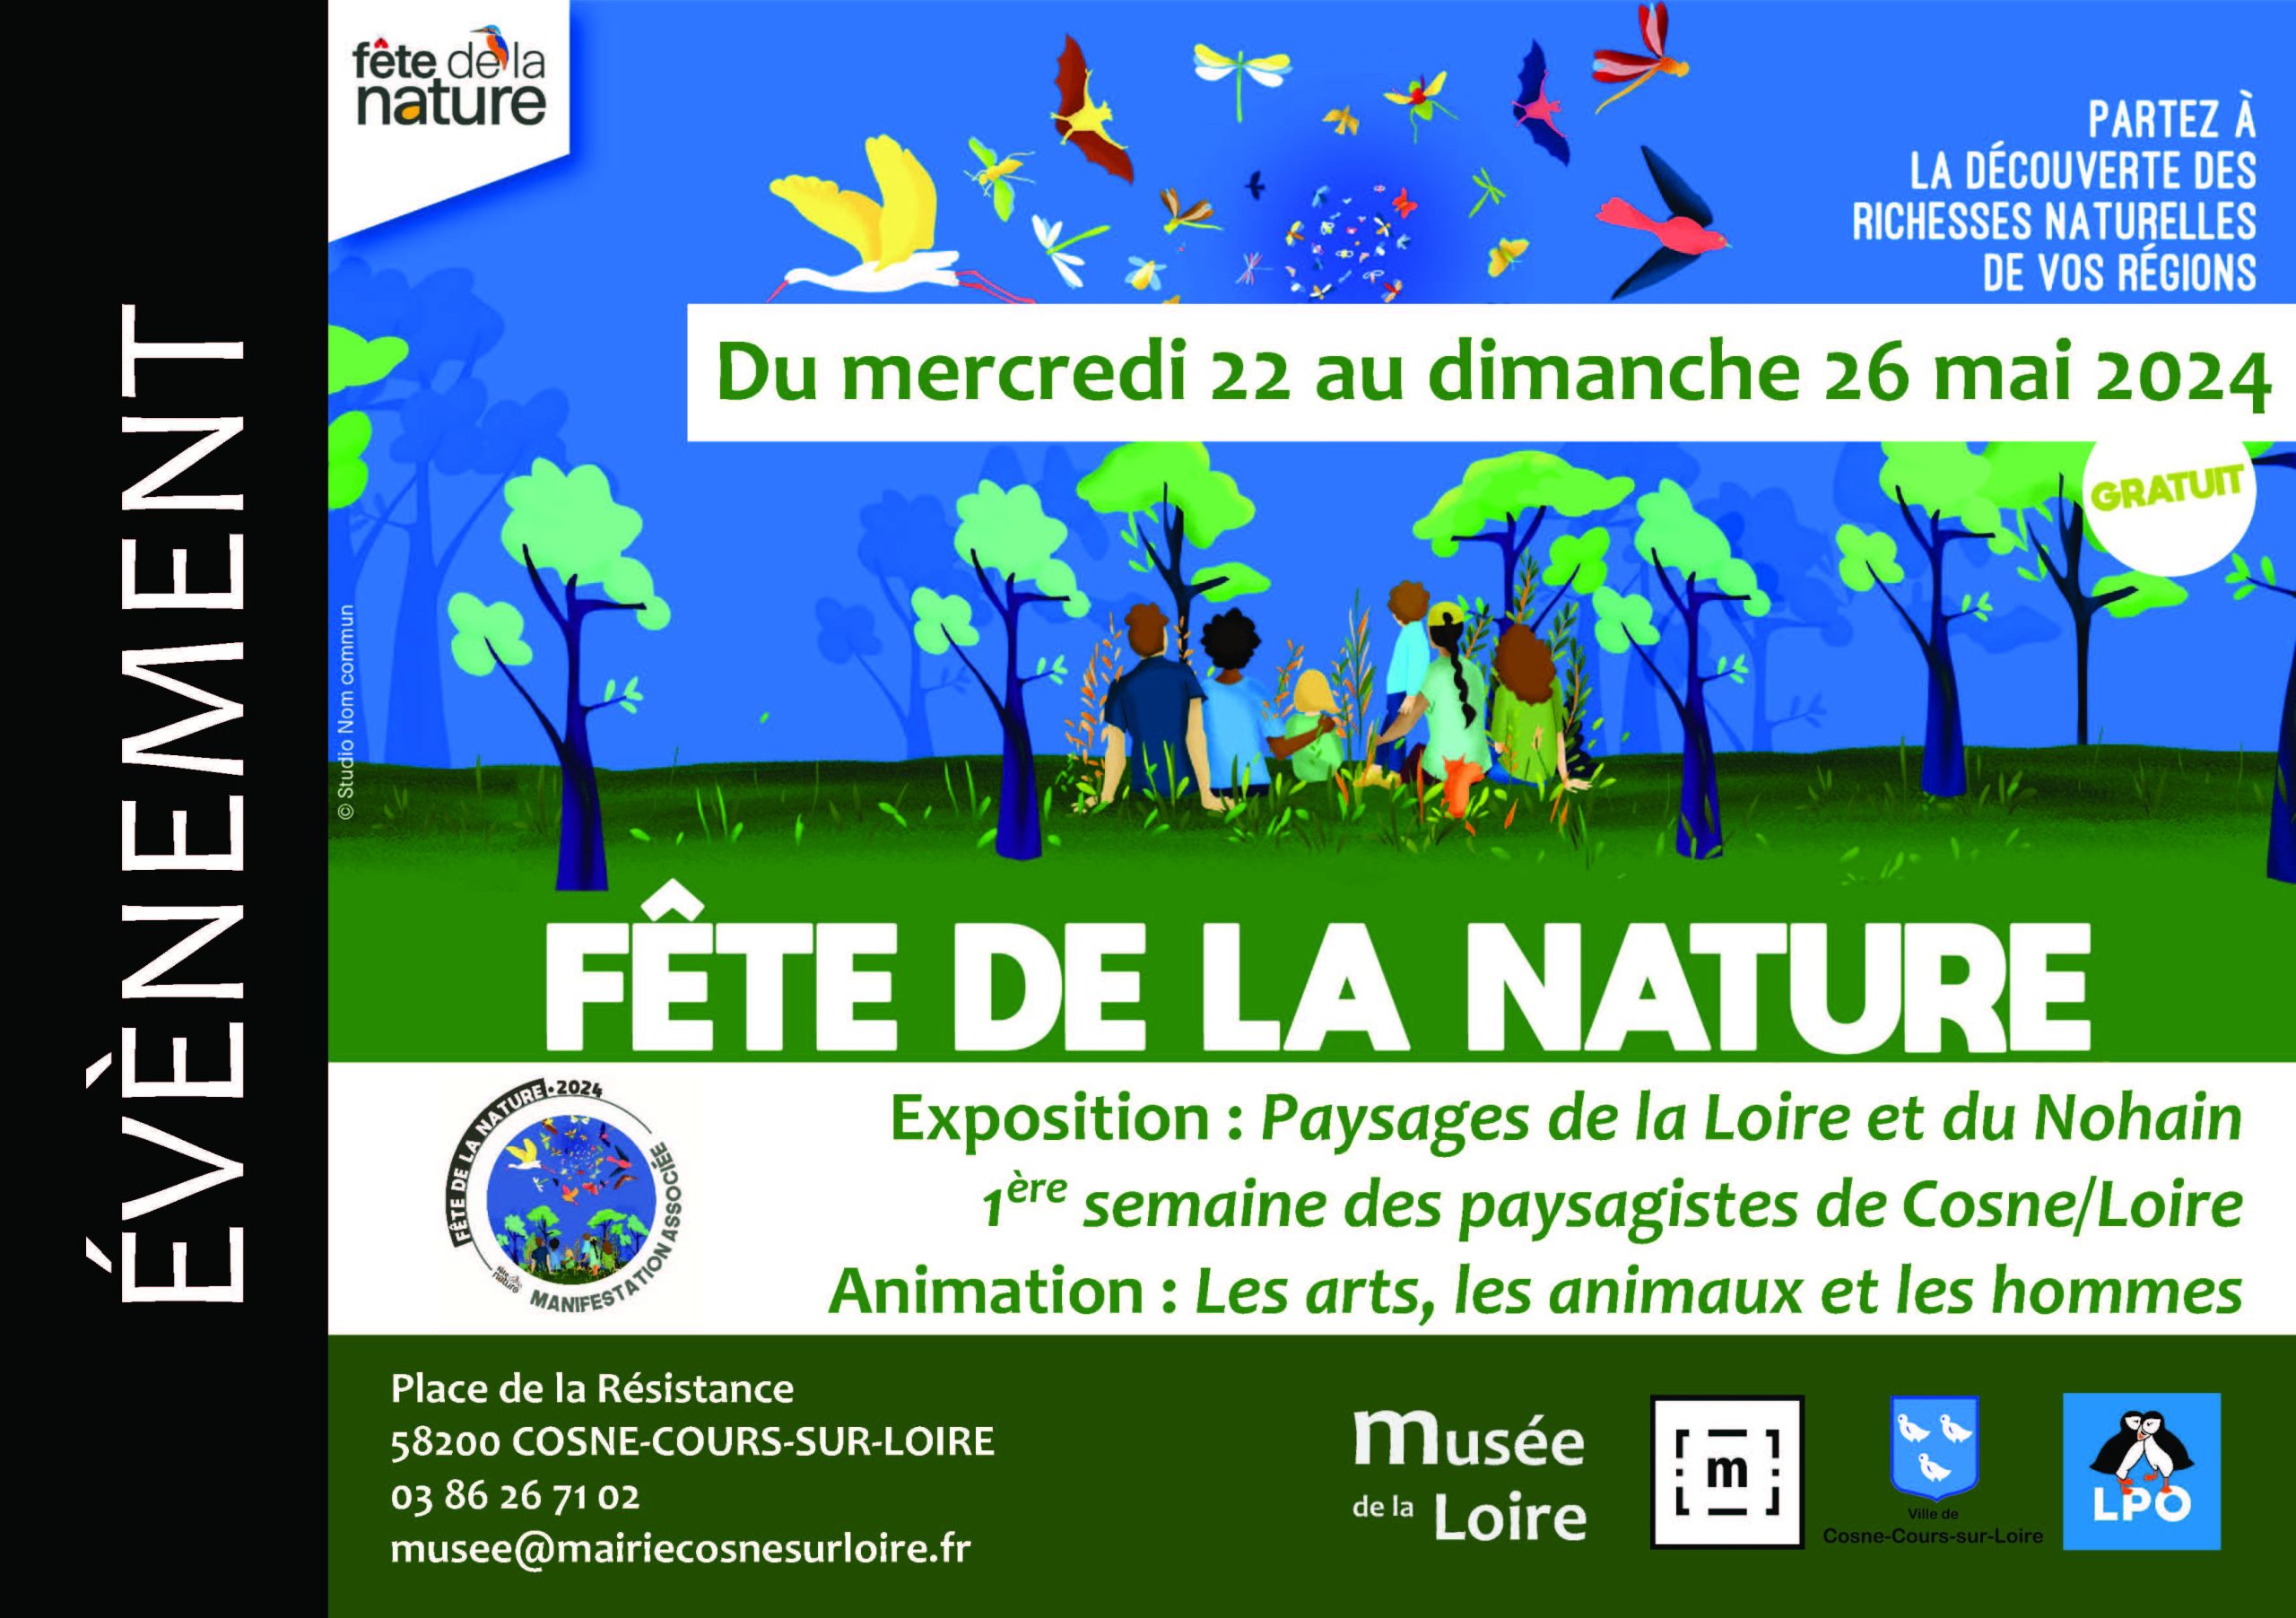 Fête de la nature au Musée de la Loire de Cosne-Cours-sur-Loire Du mercredi 22 au dimanche 26 mai 2024 GRATUIT